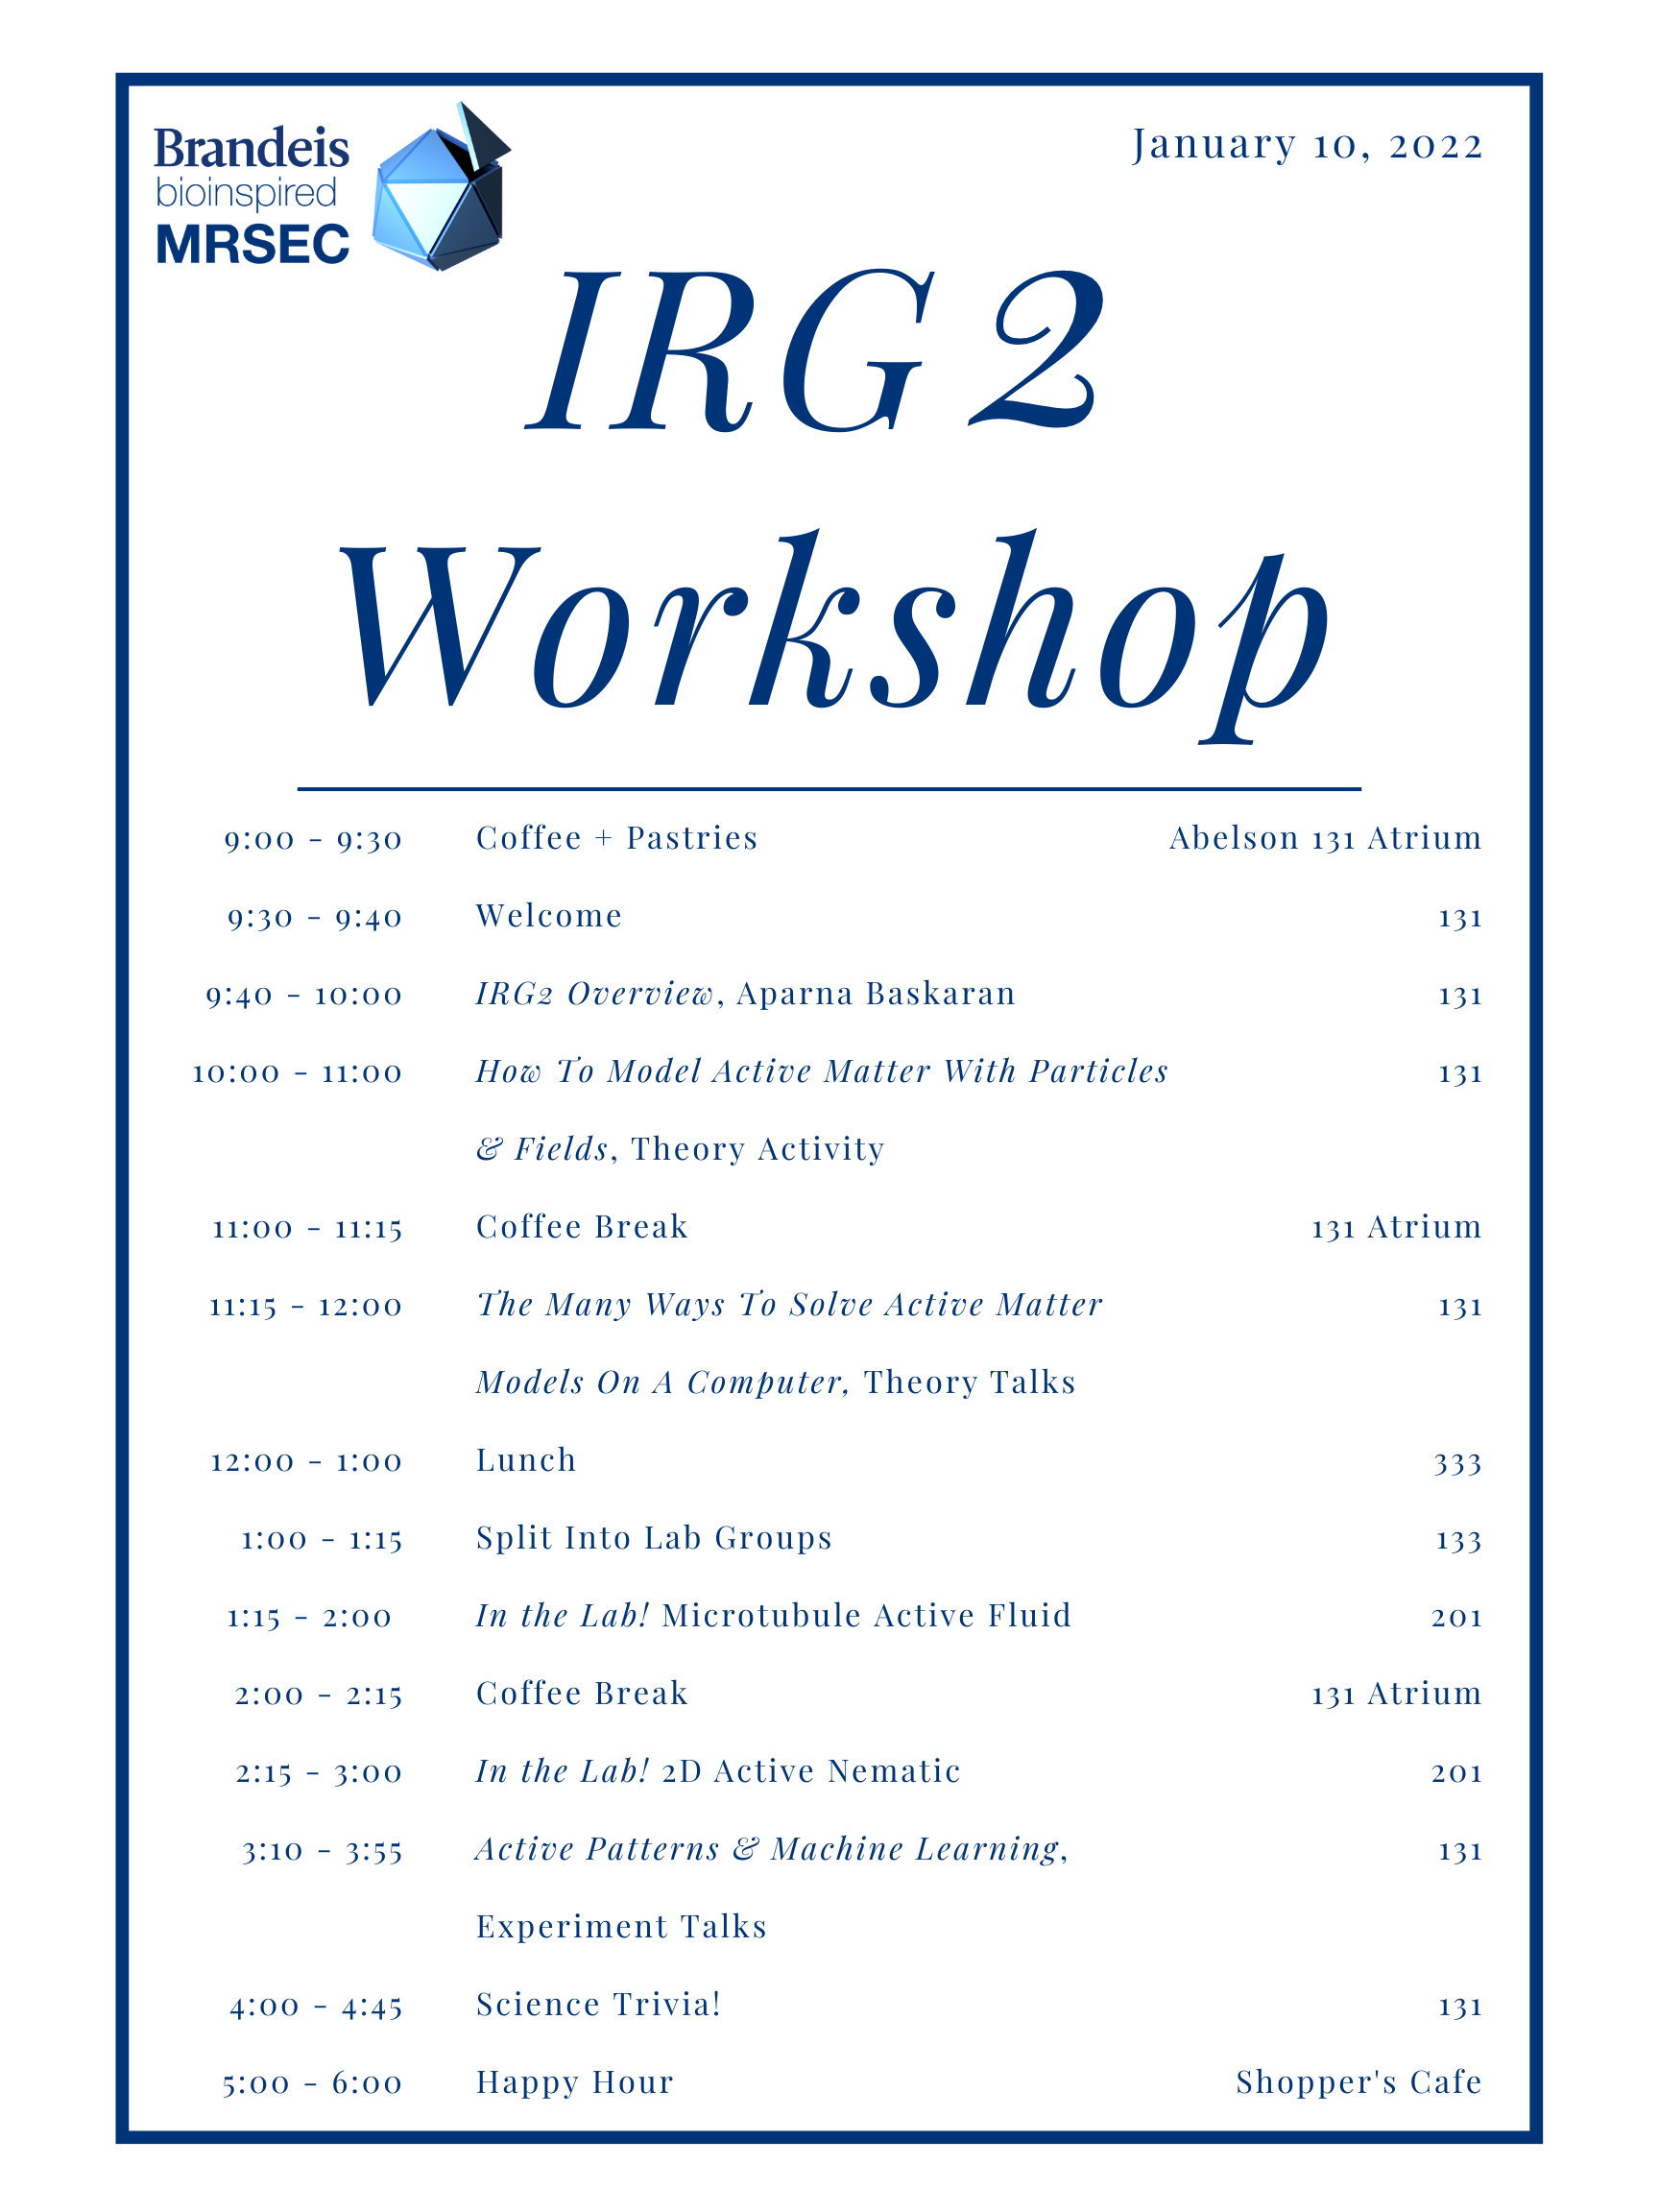 Schedule for IRG2 Workshop